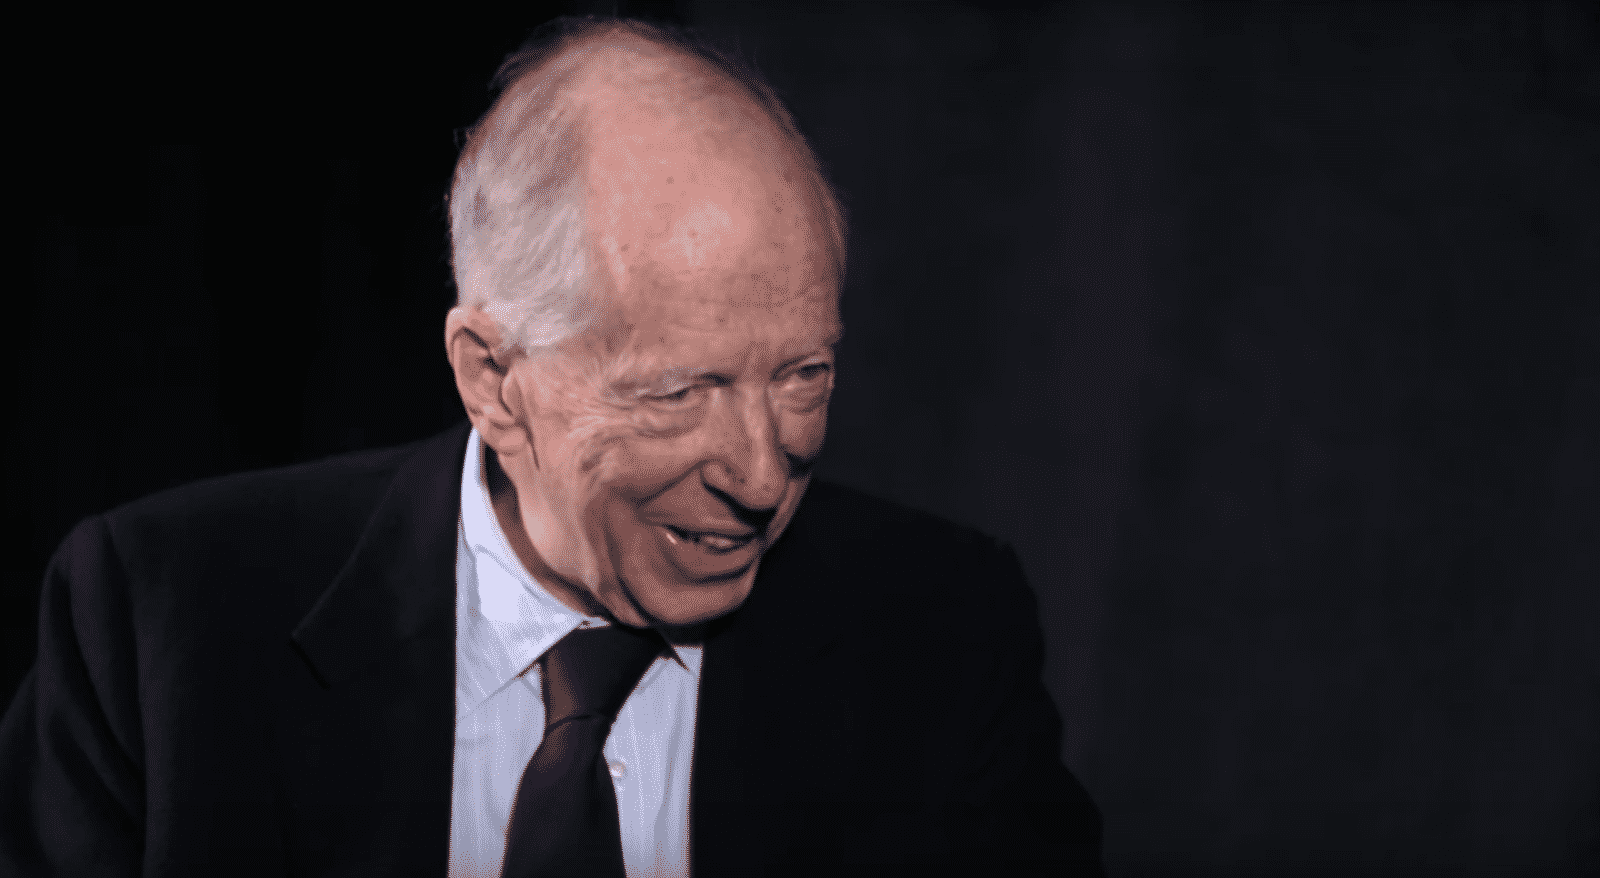 Lord Jacob Rothschild gaf in 2016 per ongeluk toe dat de nieuwe wereldorde faalt